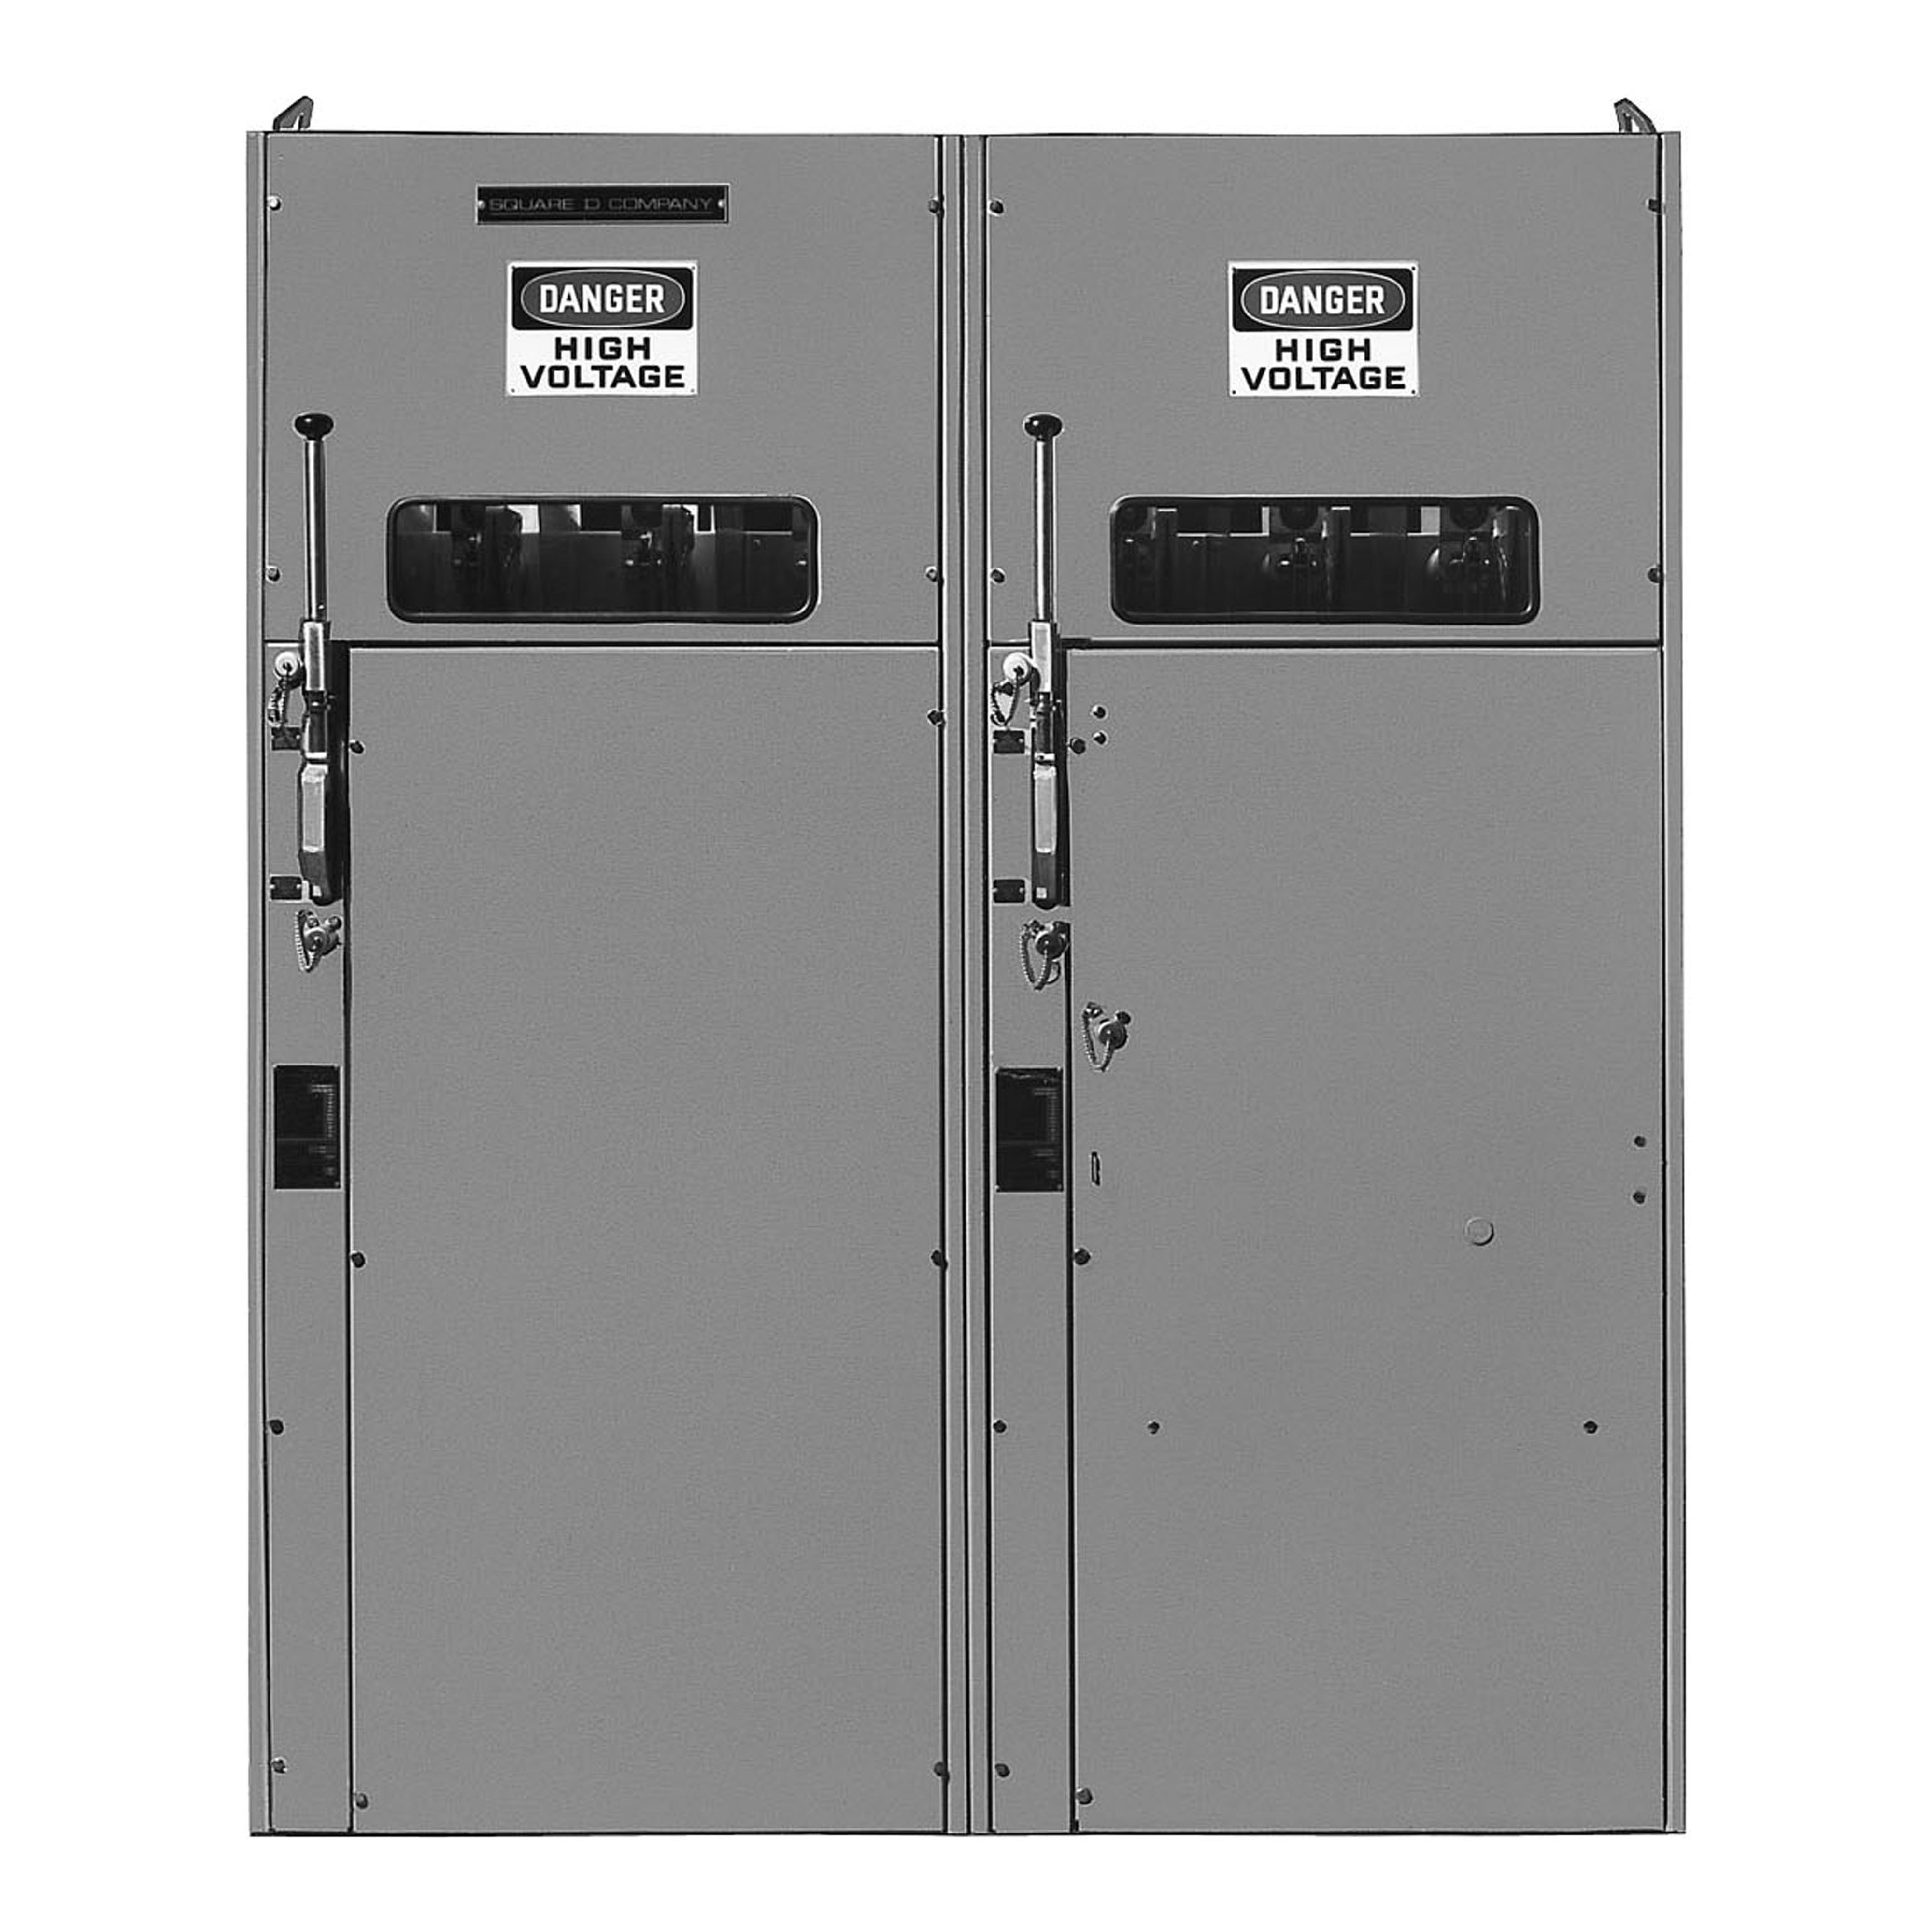 Switchgear, HVL, duplex, 600A, 15kV, 10E to 400E boric acid fuse, transformer disconnect, right, NEMA 1